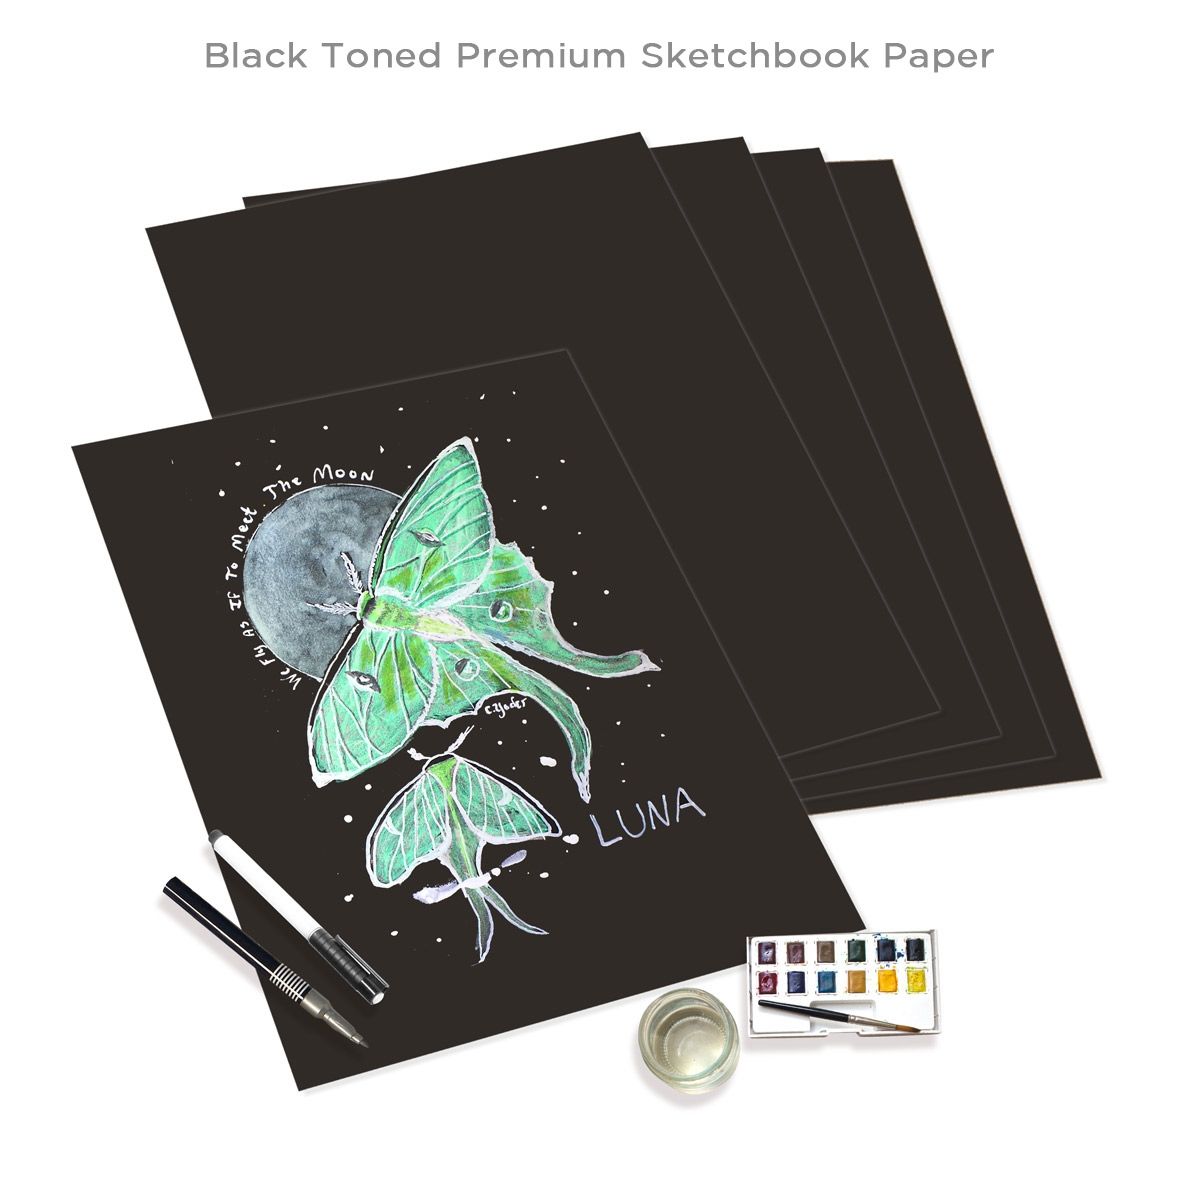 Black Sketchbook Paper with Art